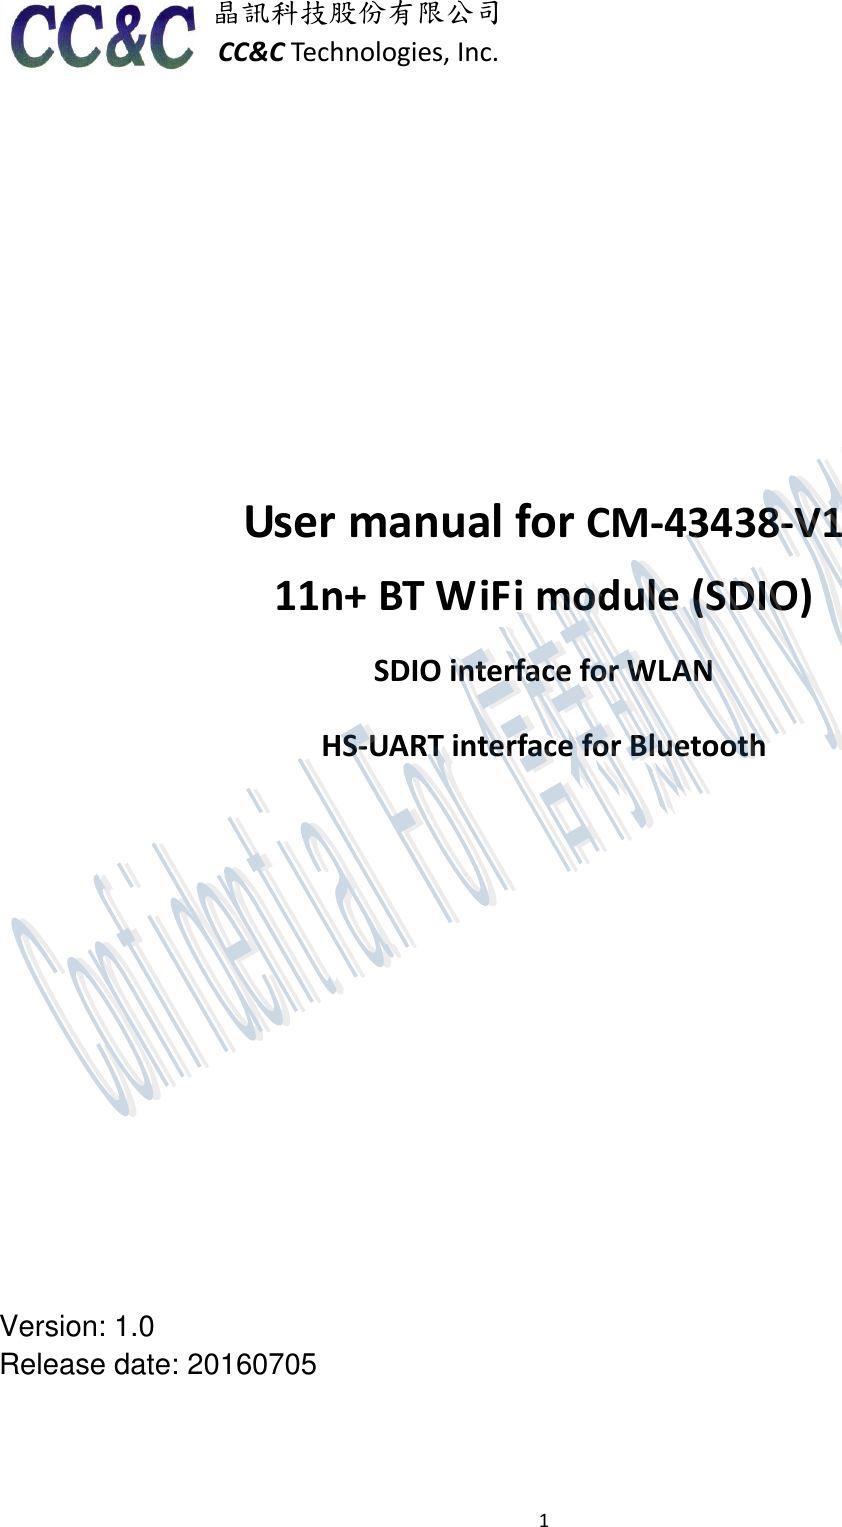 1  晶訊科技股份有限公司 CC&amp;C Technologies, Inc.           User manual for CM-43438-V1 11n+ BT WiFi module (SDIO)   SDIO interface for WLAN HS-UART interface for Bluetooth         Version: 1.0 Release date: 20160705       